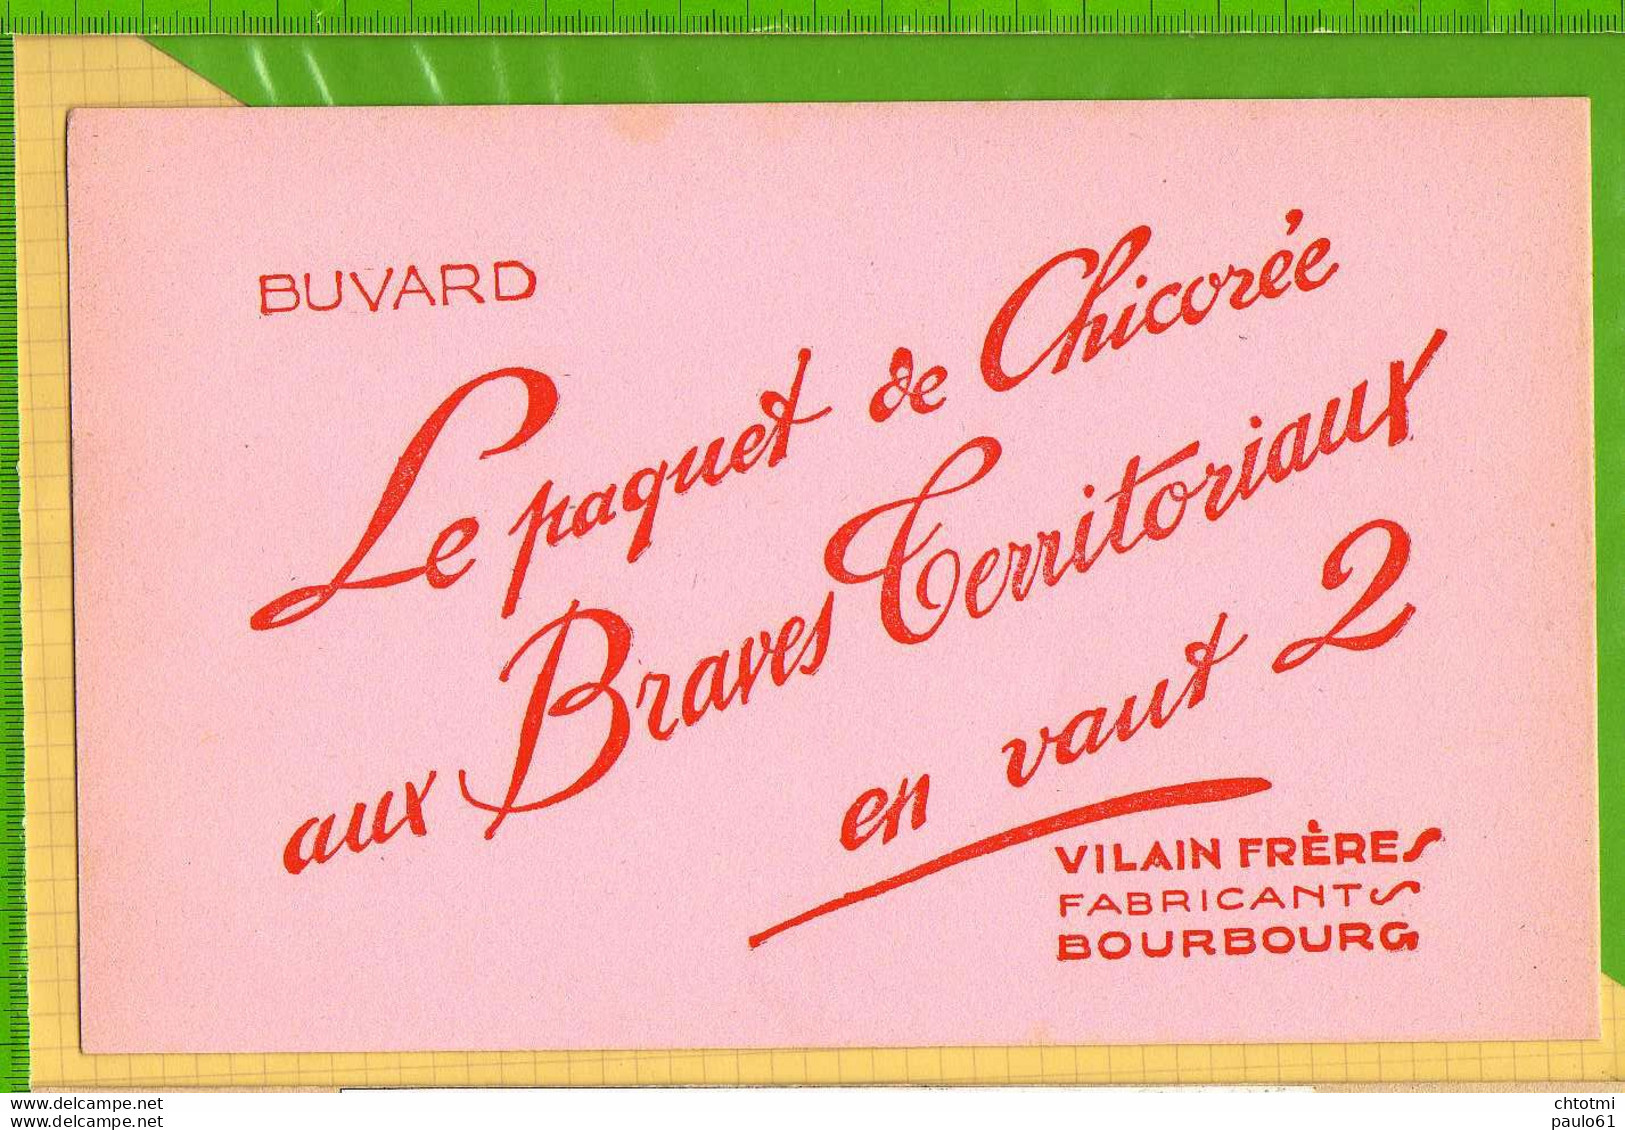 Buvard & Blotting Paper : Le Paquet De Chicorée AUX BRAVES TERRITORIAUX  En Vaut 2 VILAINS FRERES  BOURBOURG - Café & Thé